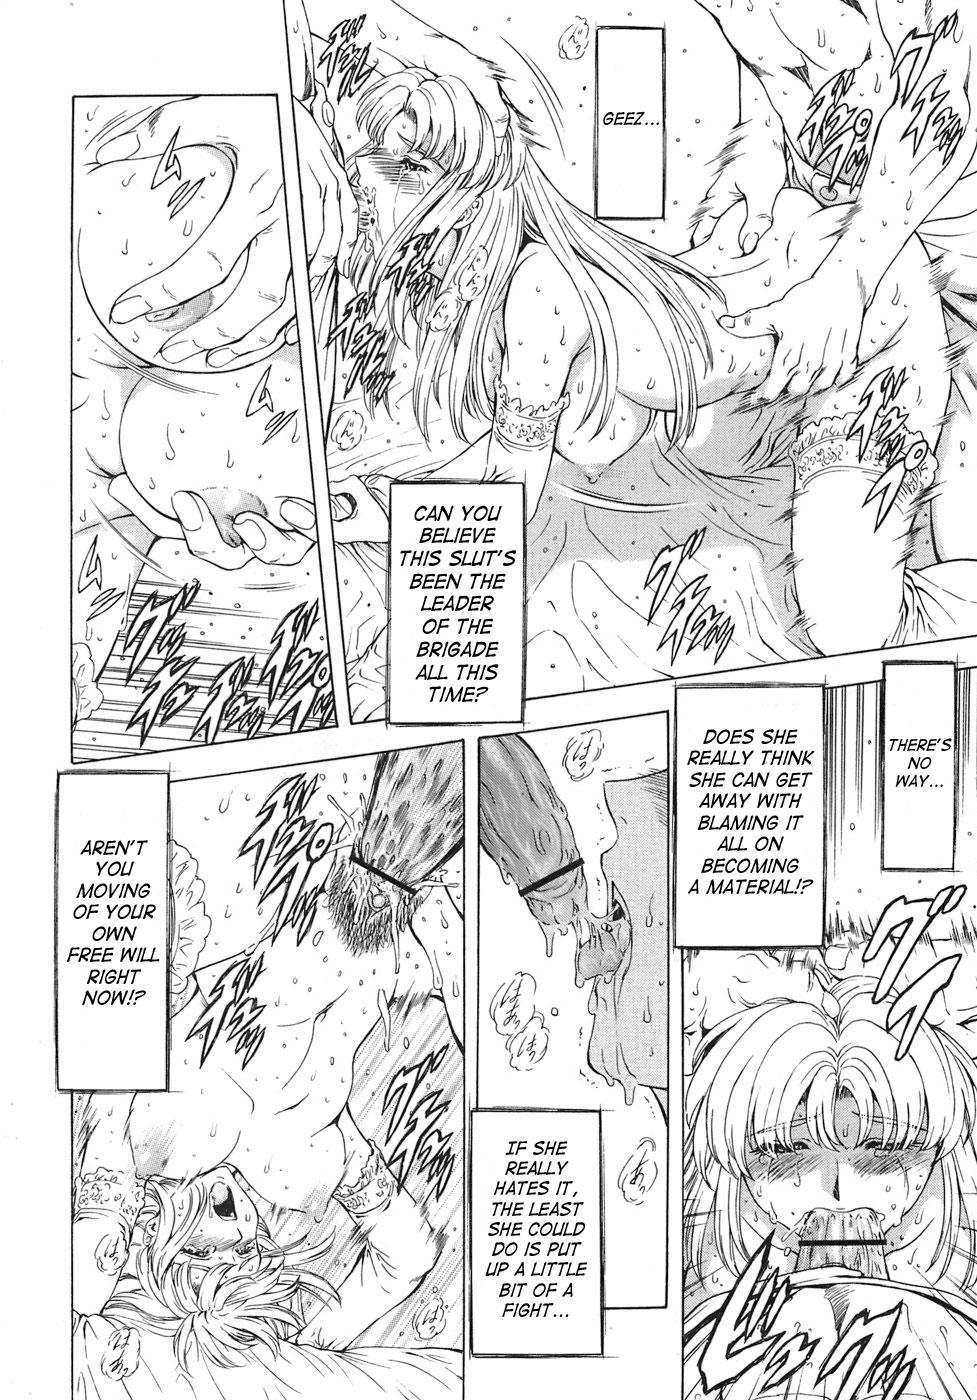 Ginryuu no Reimei | Dawn of the Silver Dragon Vol. 3 129